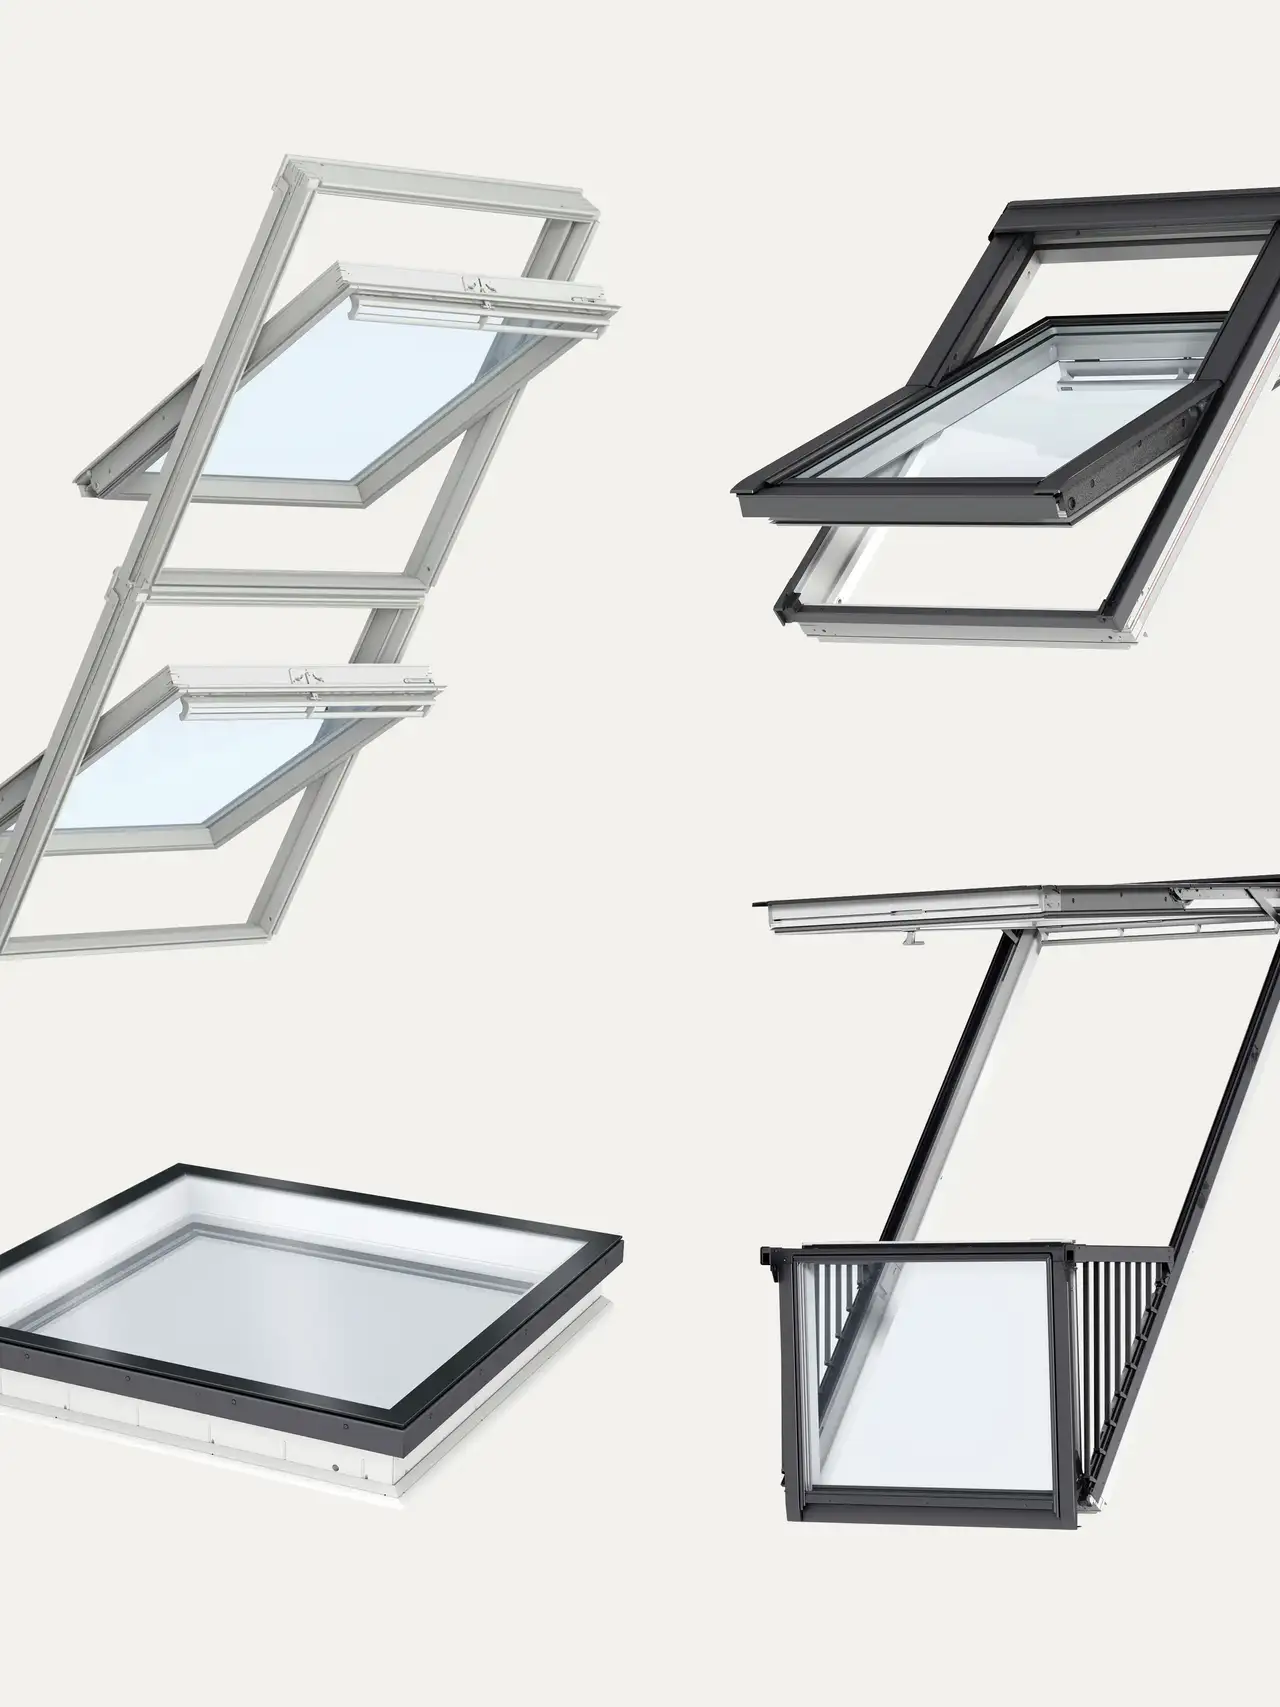 Sammlung von VELUX Dachflächenfenstern in verschiedenen Stilen und Öffnungsmechanismen.